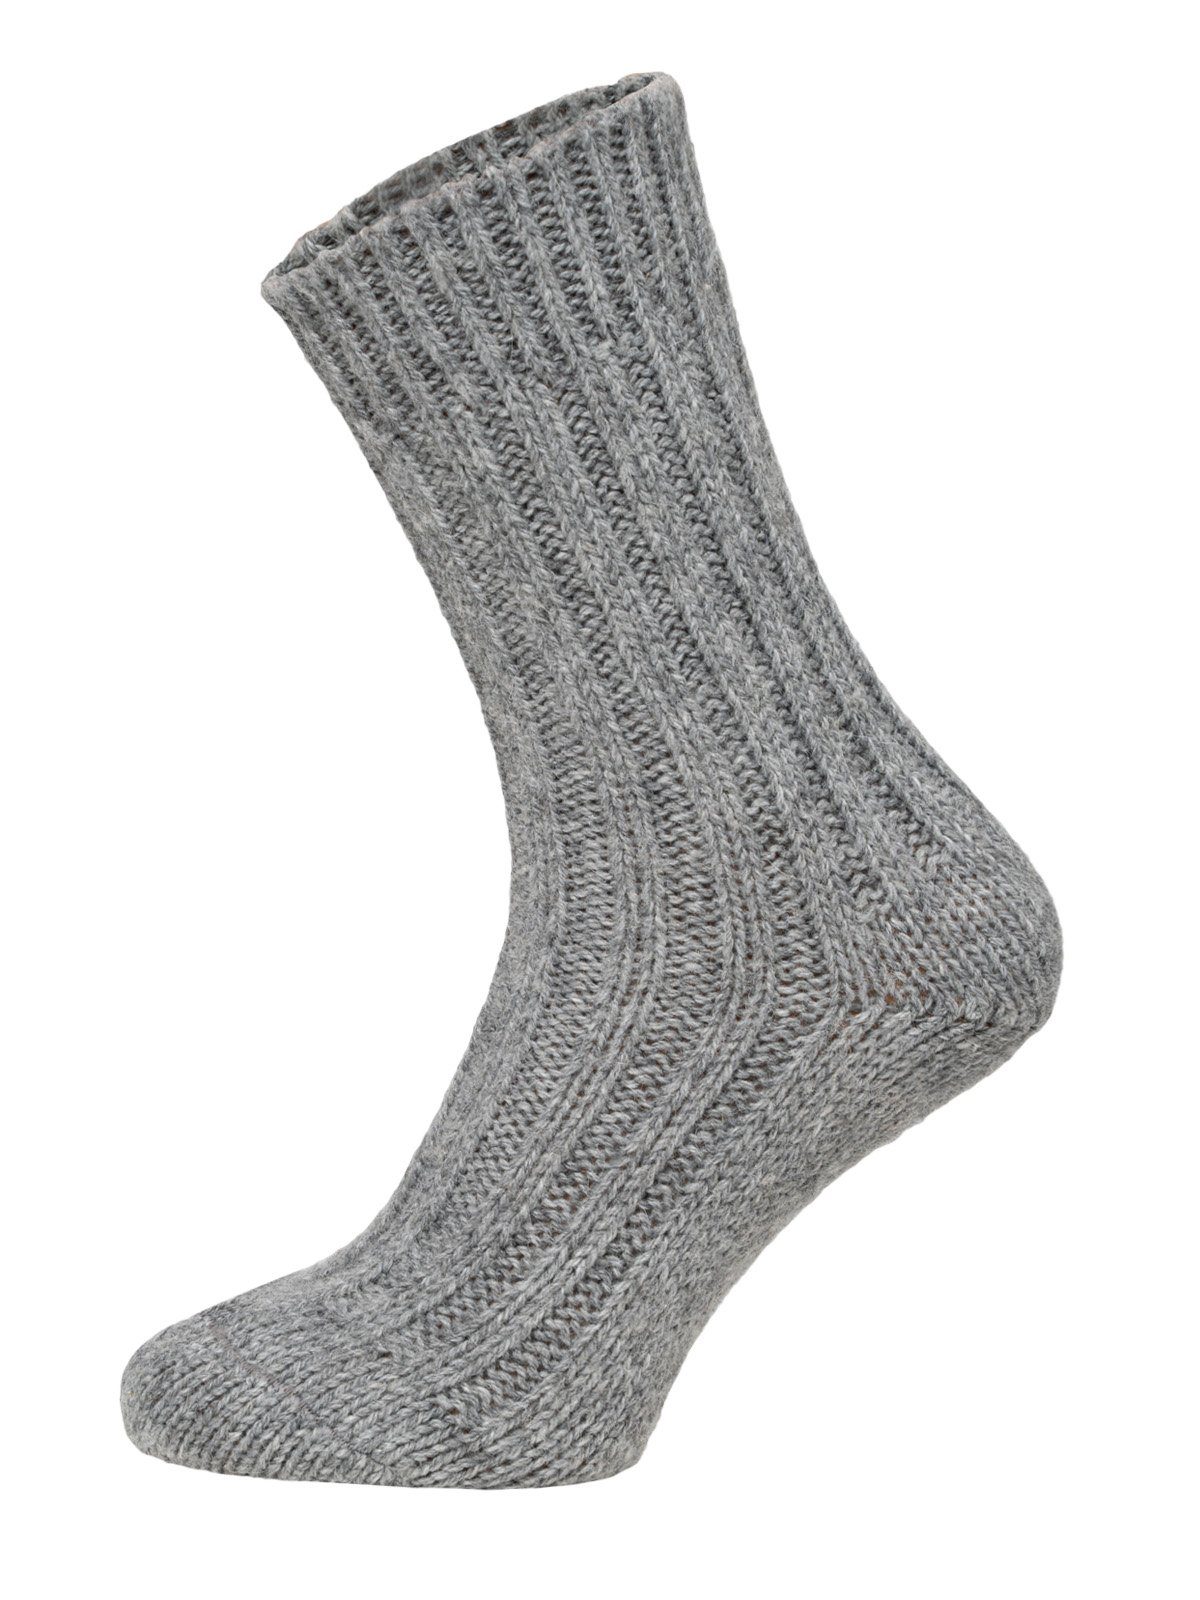 HomeOfSocks Socken Wollsocken mit Alpakawolle Strapazierfähige und warme Wollsocken mit 50% Wollanteil und Alpakawolle 2xGrau